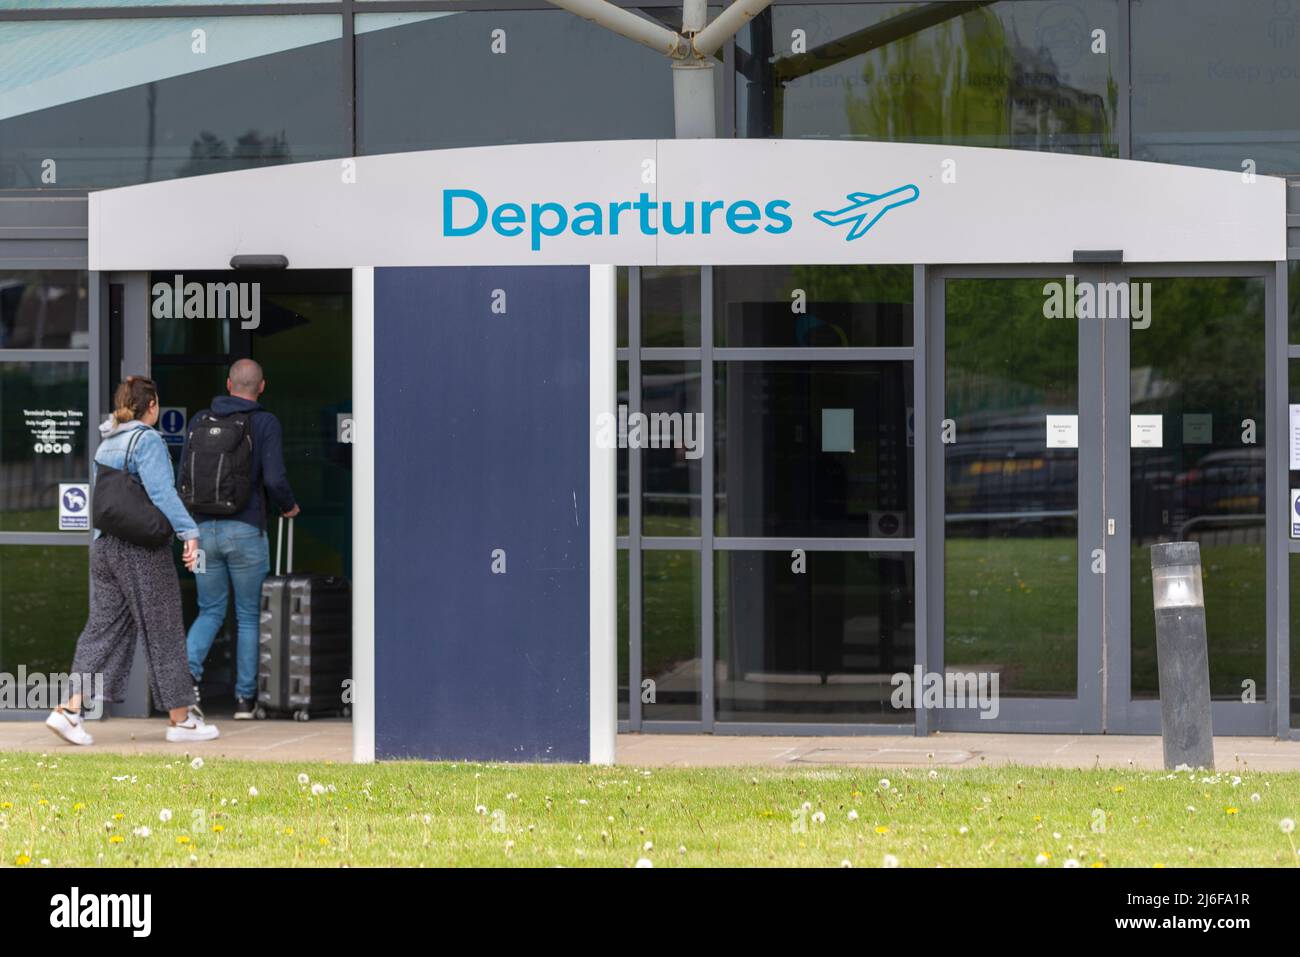 London Southend Airport, Essex, Großbritannien. 1.. Mai 2022. Der Flughafen in der neuen Stadt Southend on Sea ist seit dem endgültigen Rückzug von Ryanair im Oktober 2021 ohne Passagierflüge. Verursacht durch den Rückgang der Flugreisen während der COVID-Pandemie. EasyJet war seit seiner Ankunft im Jahr 2012 der Hauptbetreiber des Flughafens, zog jedoch im August 2020 alle Dienste zurück. Die Fluggesellschaft ist heute für den ersten der geplanten 12 wöchentlichen Linienflüge zu europäischen Zielen zurückgekehrt. Die heutige Ankunft von Palma de Mallorca und die Rückkehr waren die erste Route. Passagiere, die am Flughafen ankommen Stockfoto